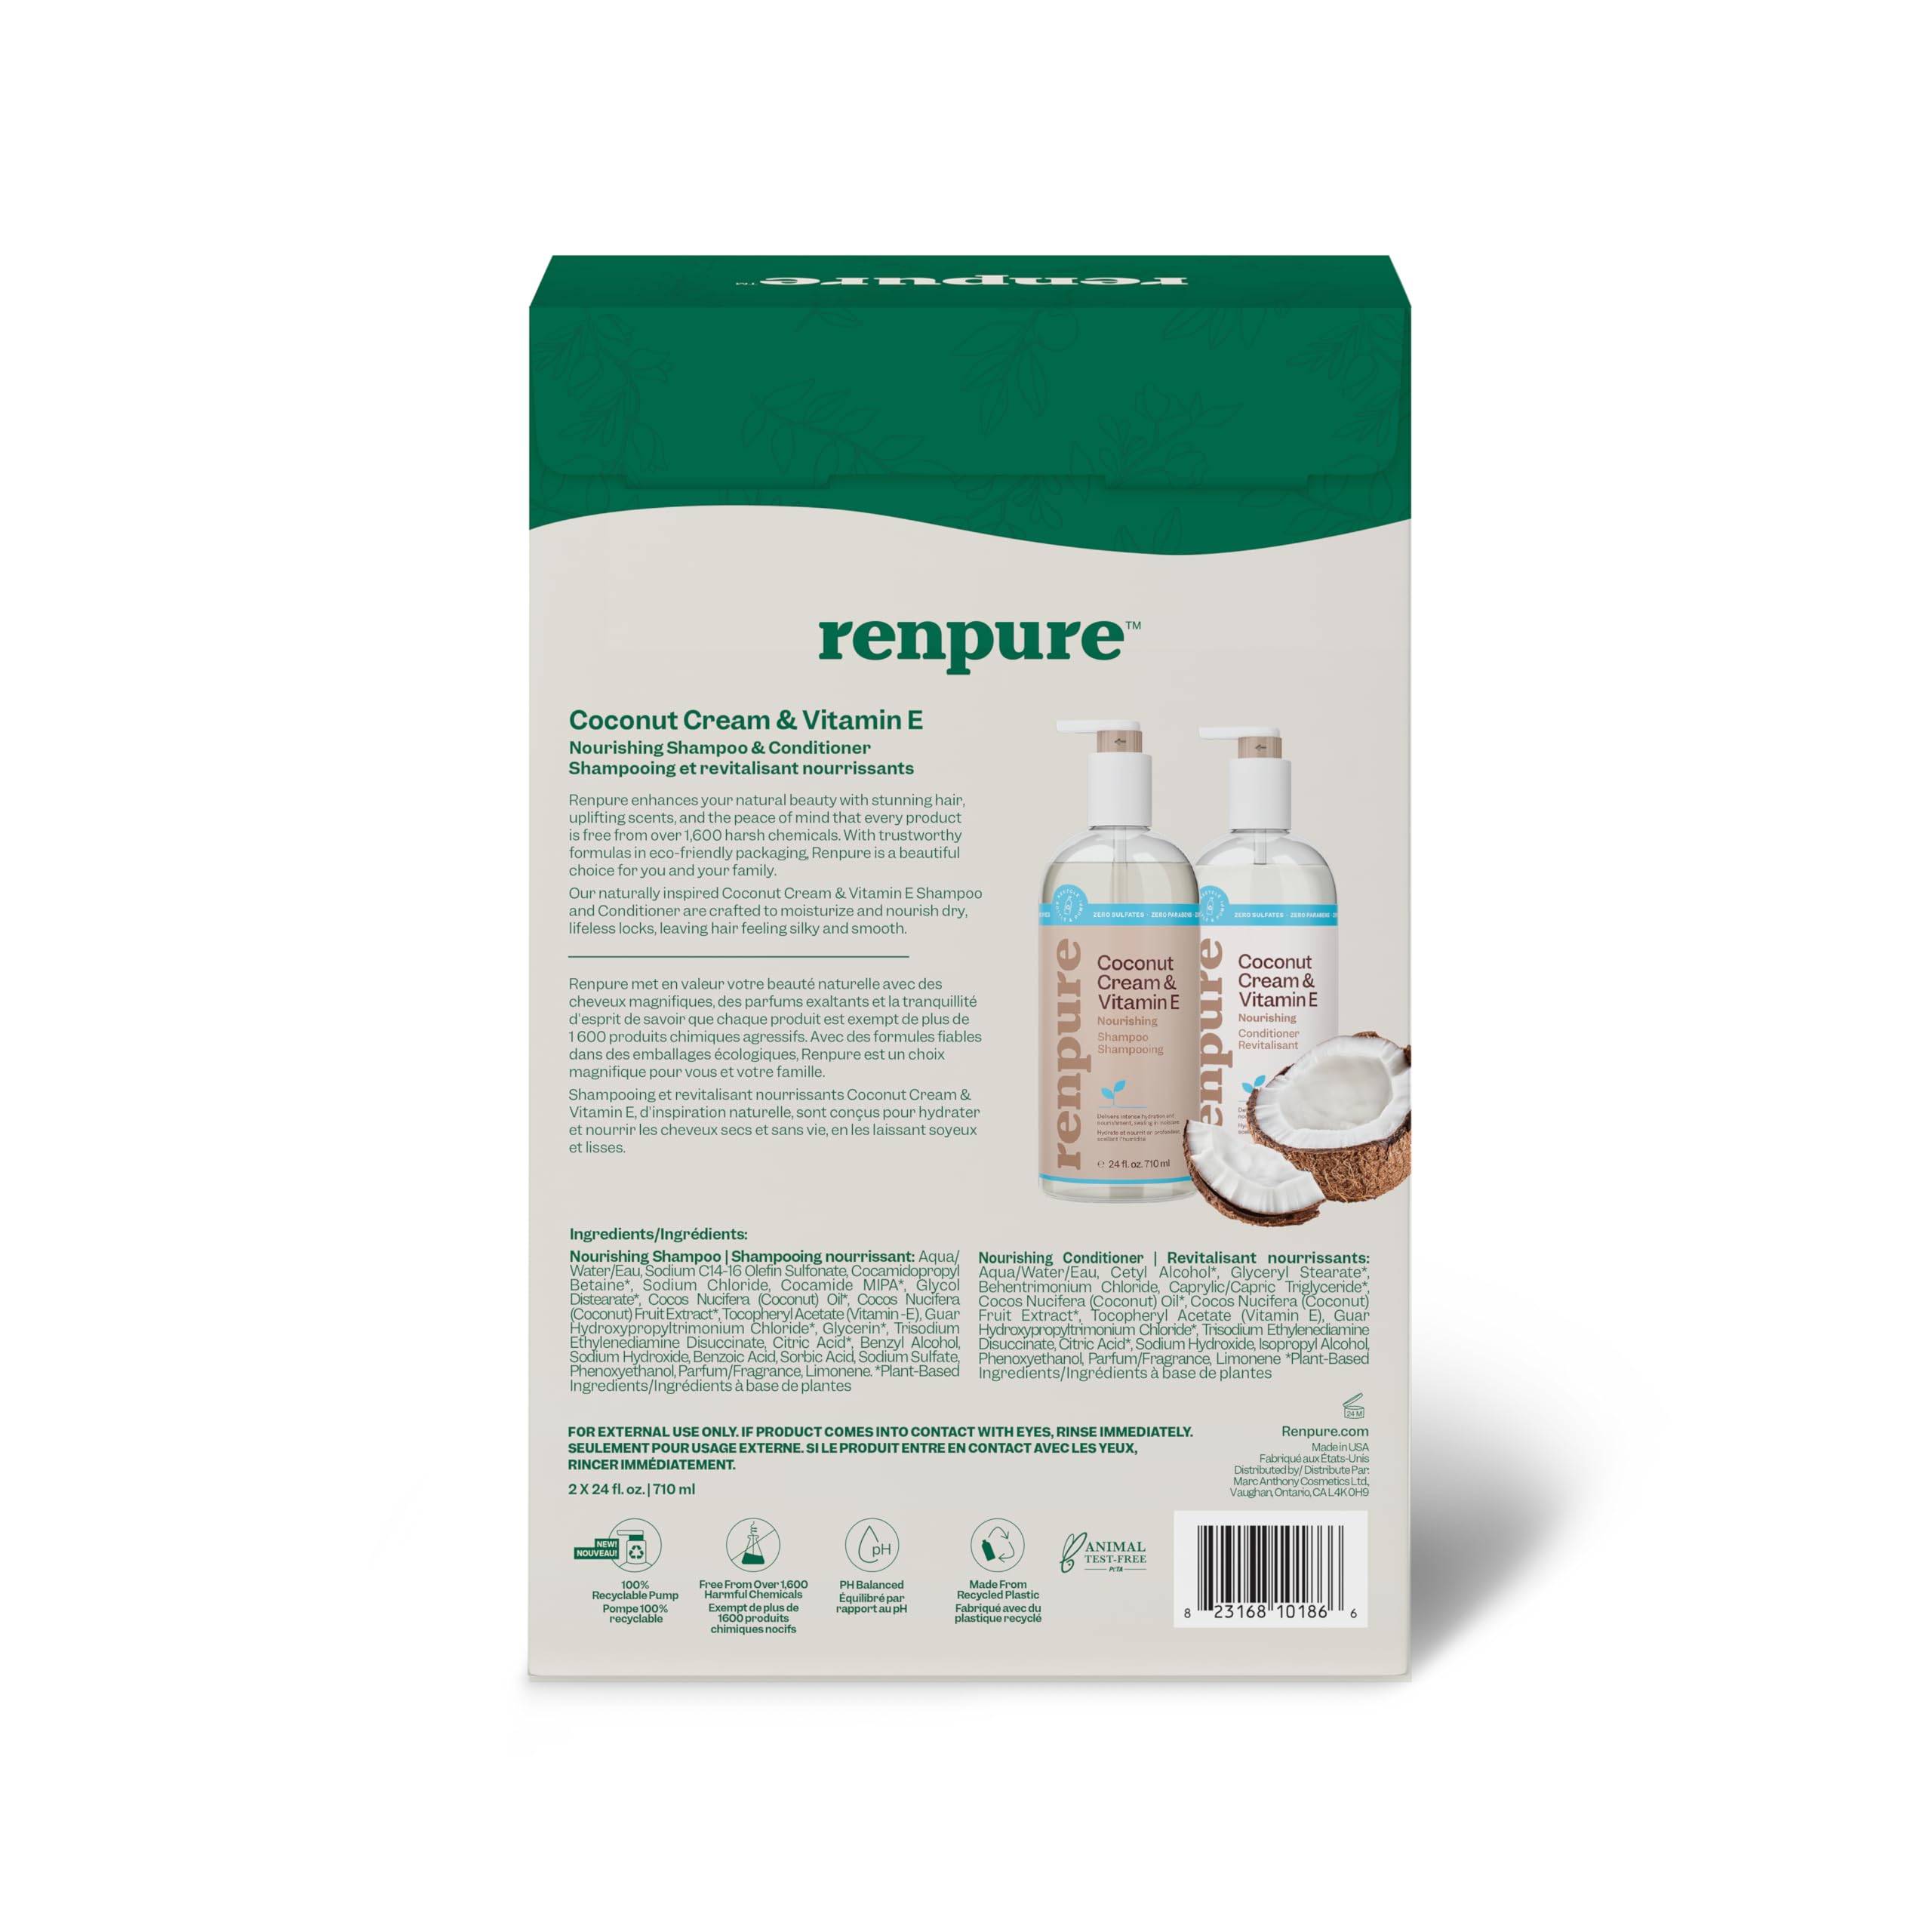 Renpure Coconut Cream & Vitamin E Nourishing Shampoo and Conditioner Set, 24oz